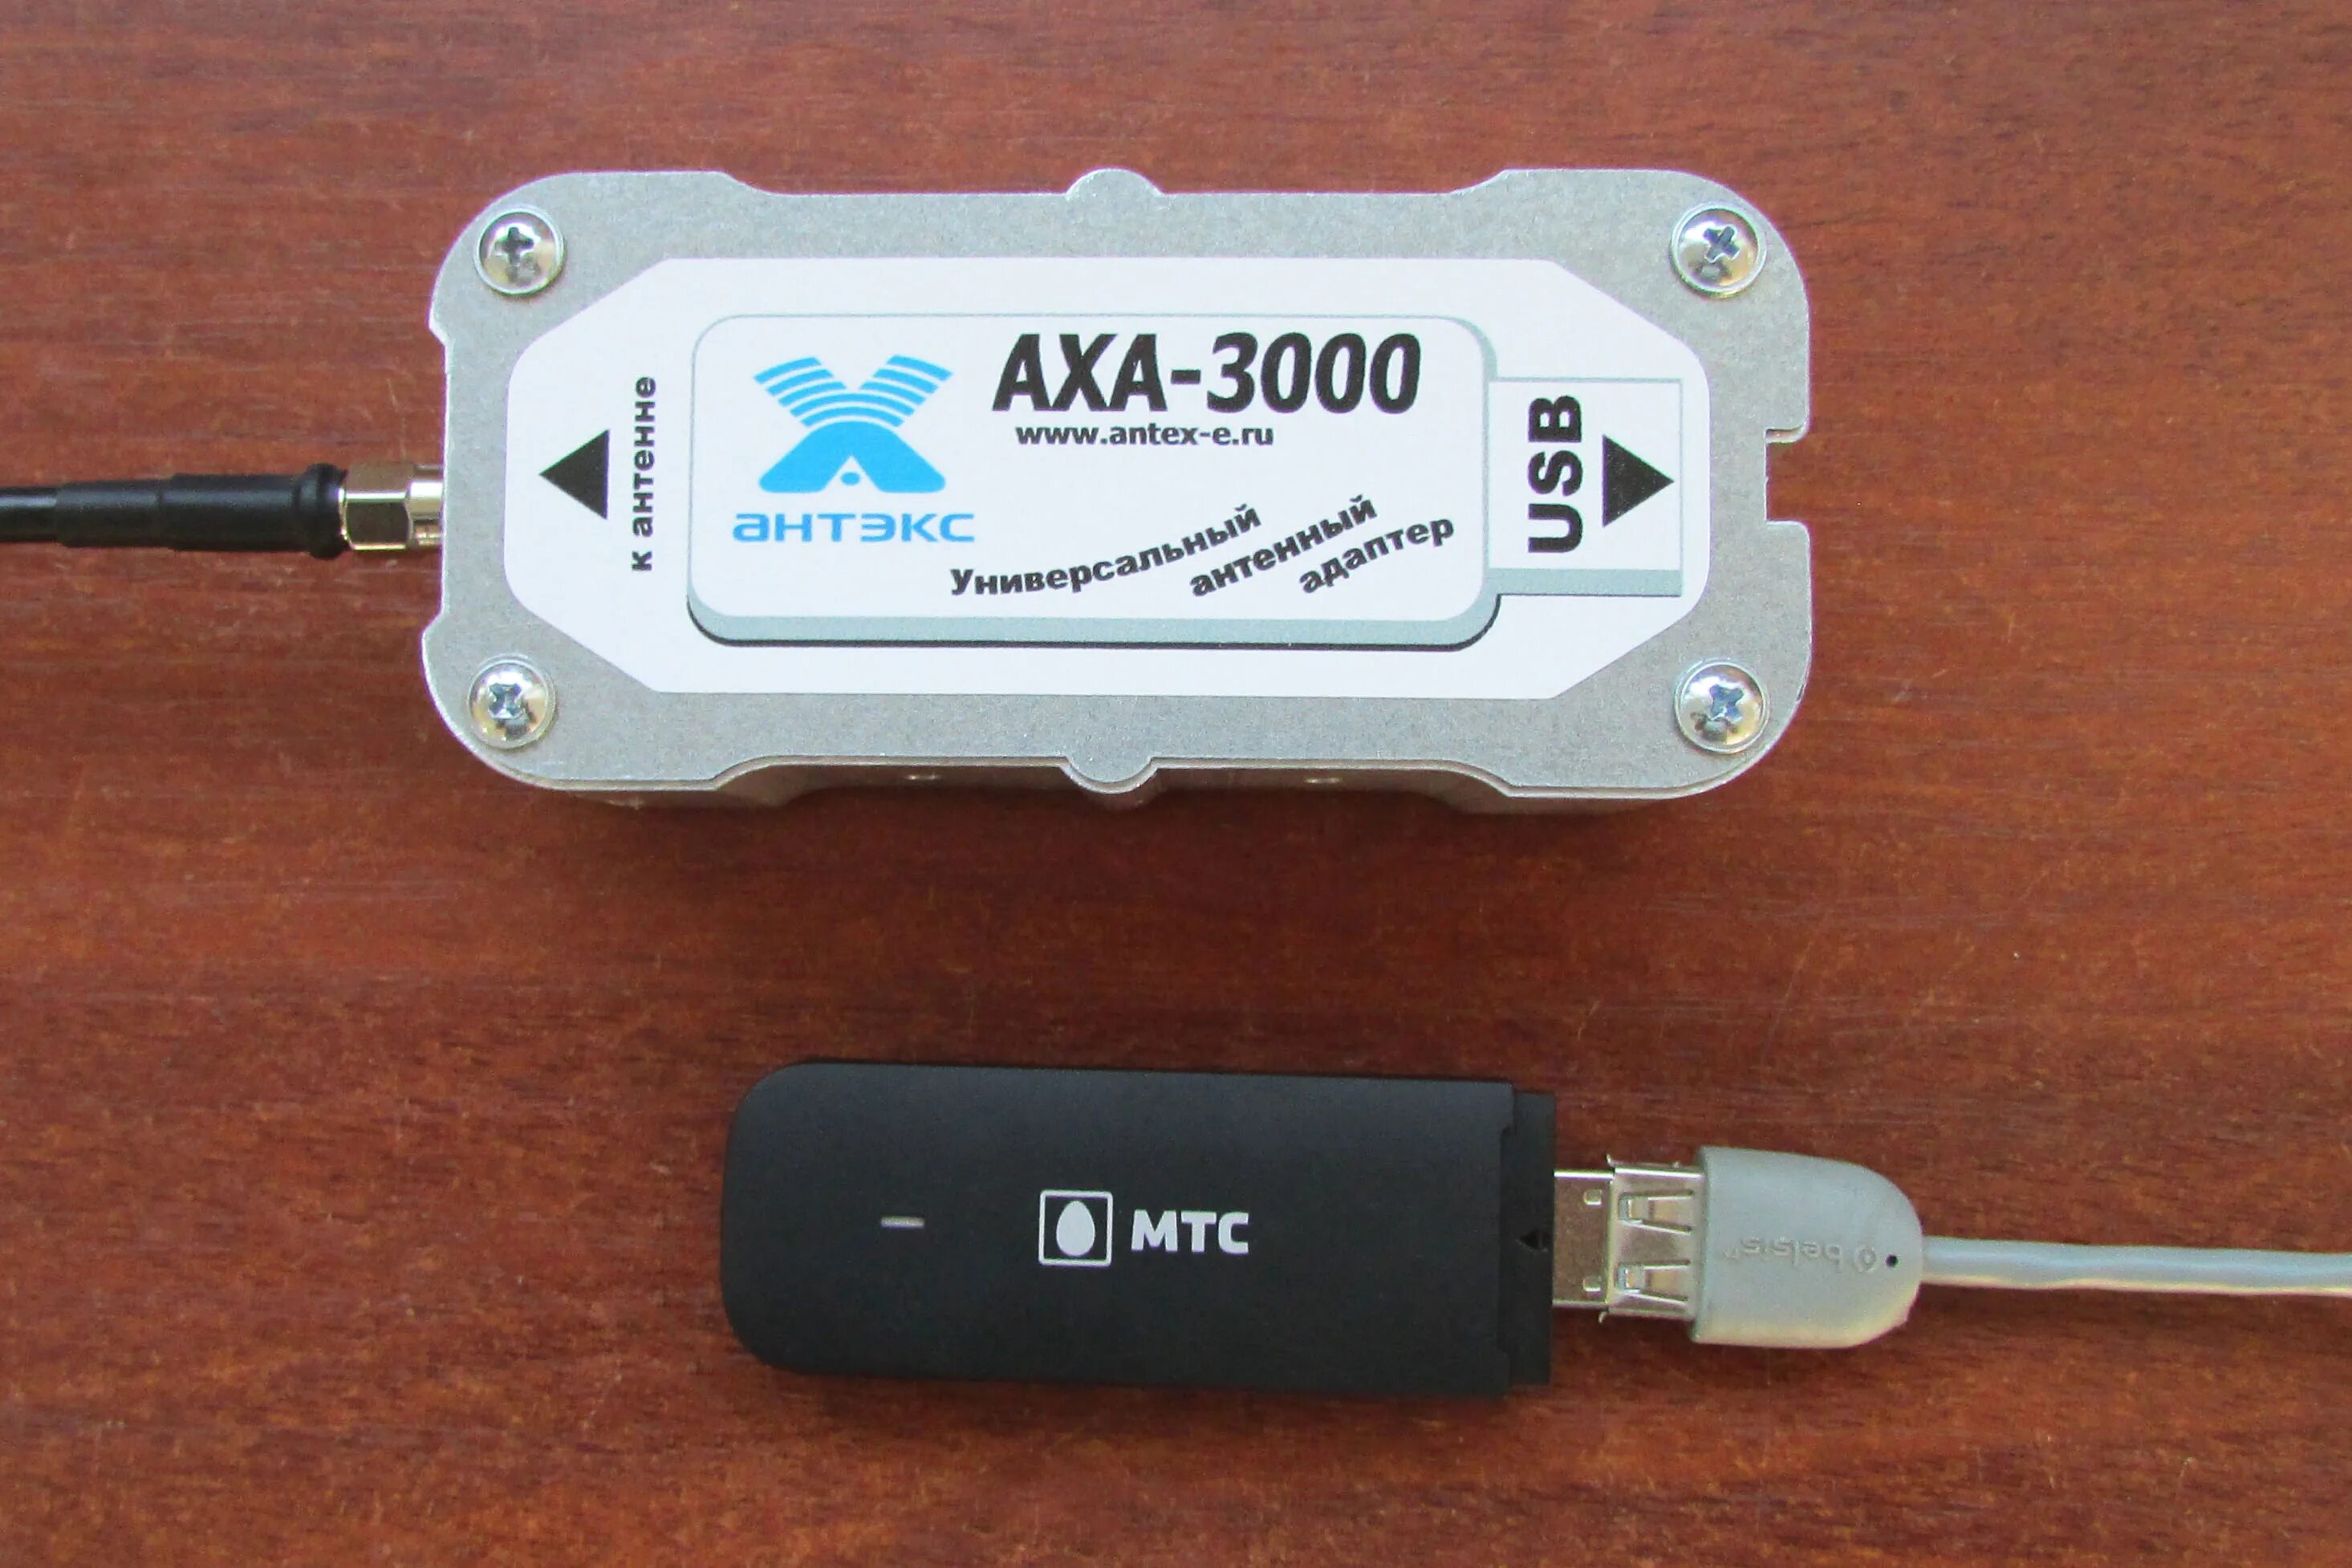 Антенна для юсб модема 4g. Усилитель для USB модема 4g. USB удлинитель для 4g модема. Адаптер универсальный AXA-3000 (для USB модема). 4g адаптер